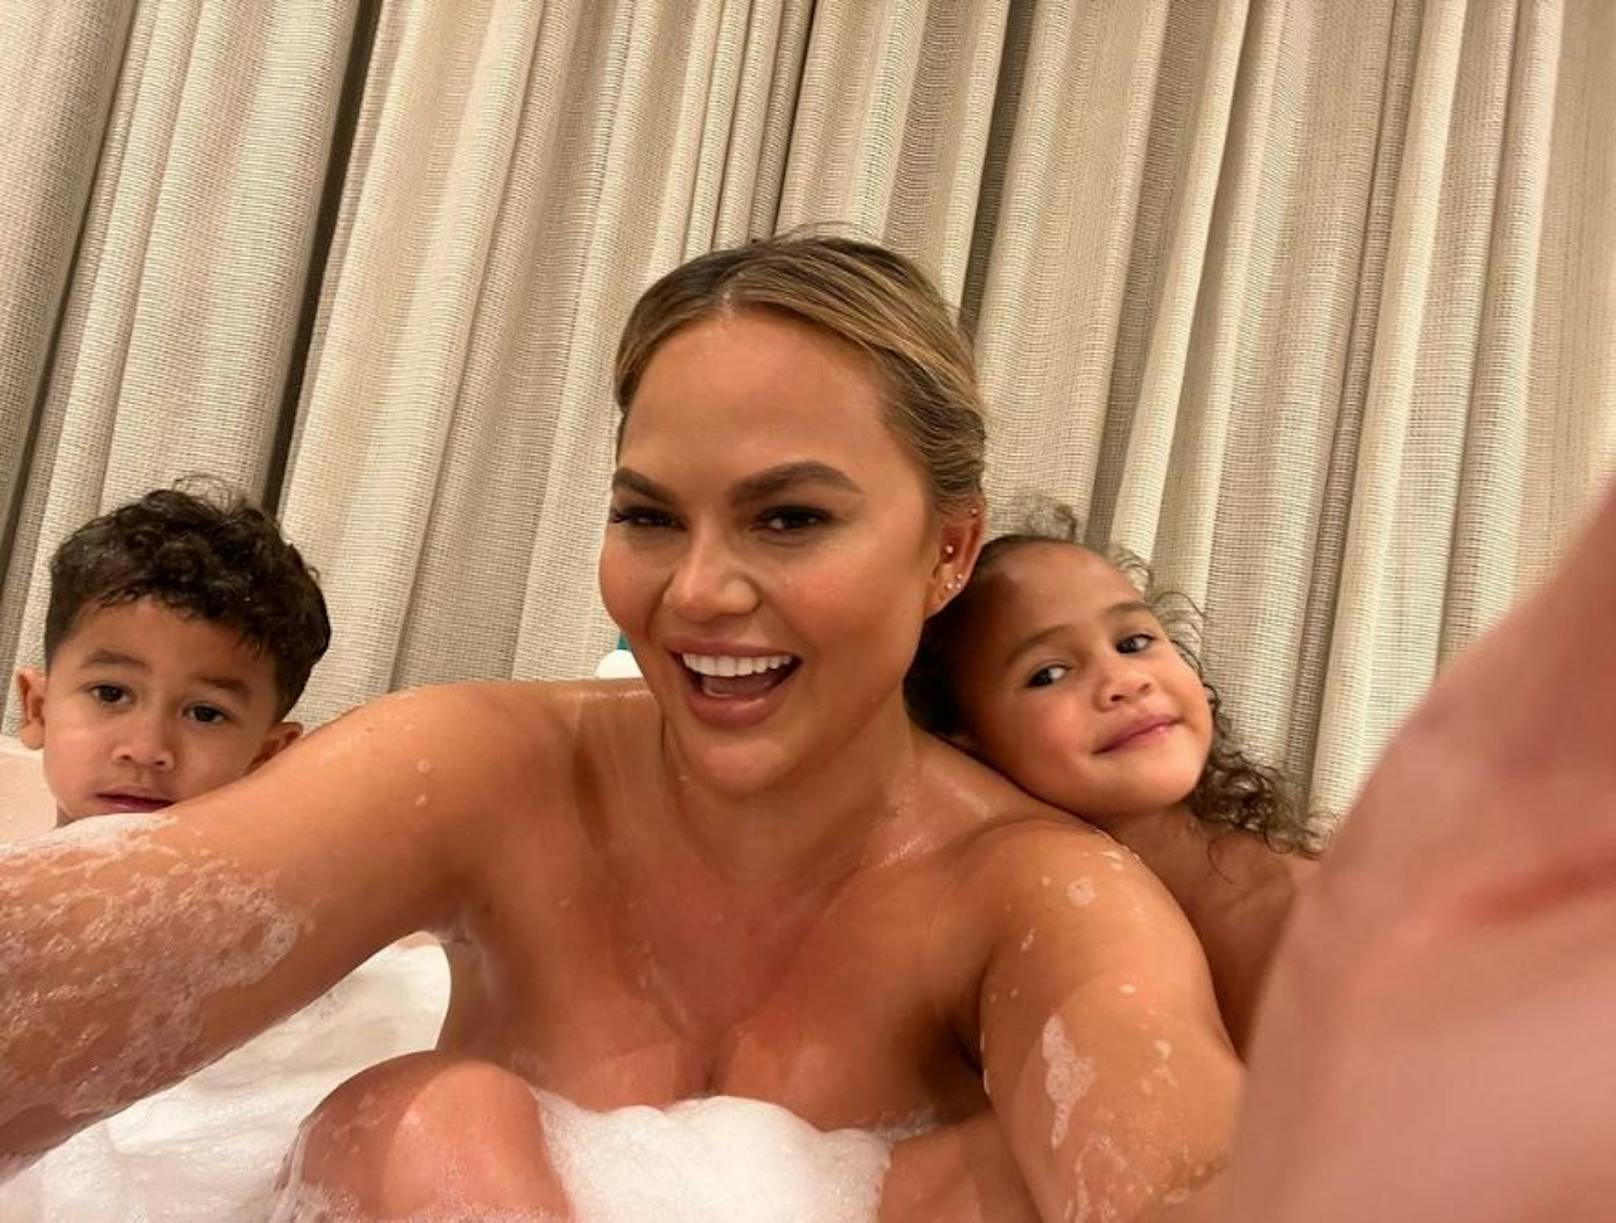 Chrissy Teigen badet mit ihren Kids. Von einigen Fans hagelte es Kritik. "So nackt darfst du dich nicht vor deinem Sohn zeigen", meint ein User.